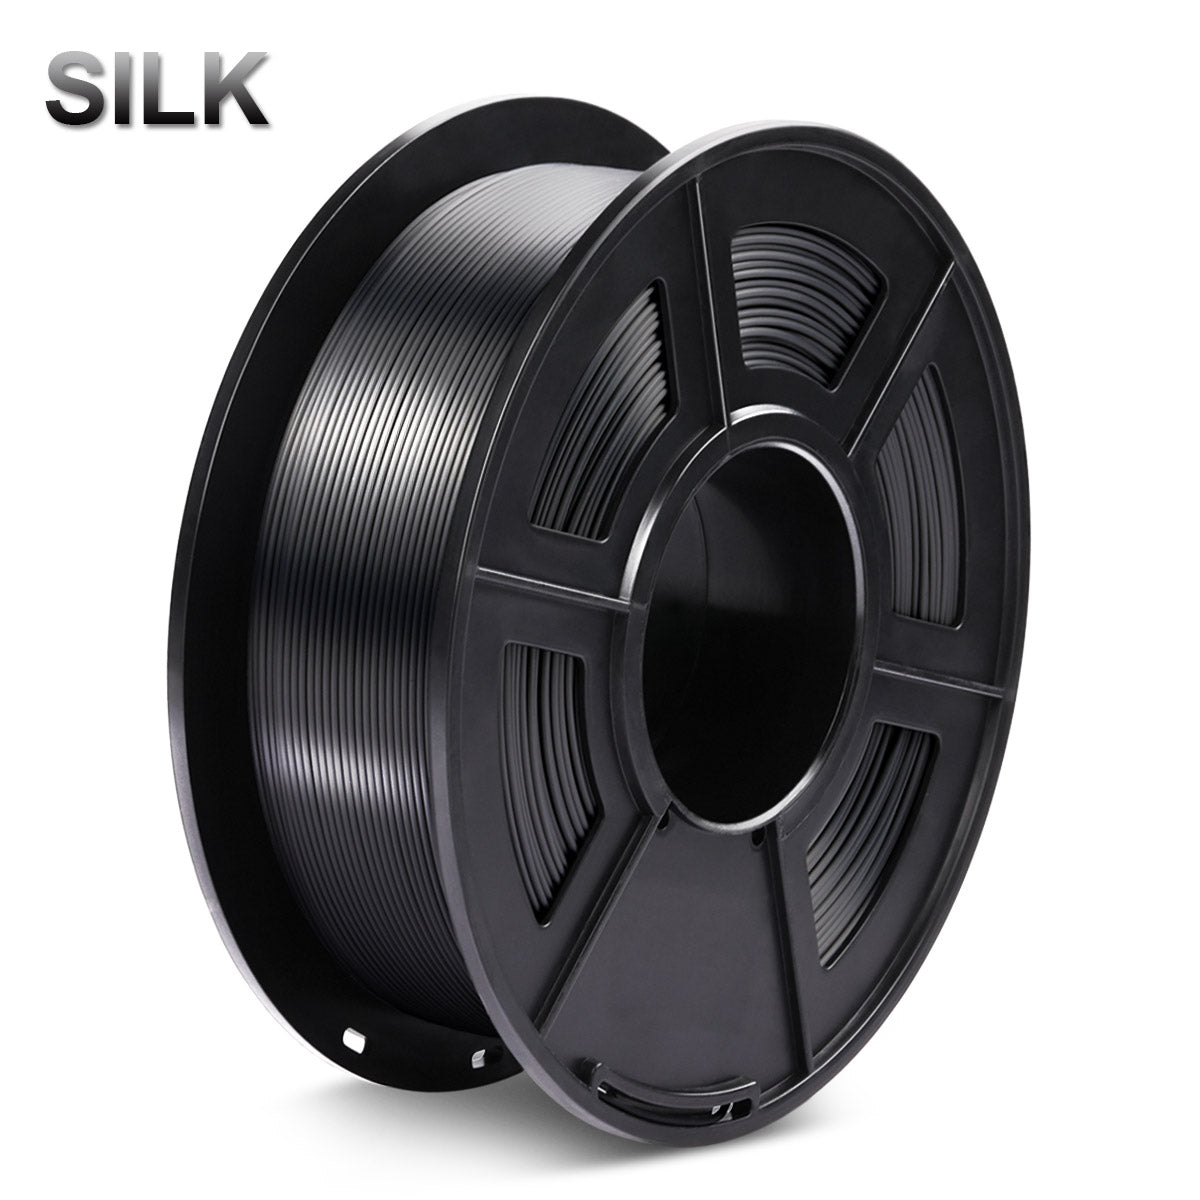 Sunlu Silk PLA+ 3D Print Filament 1.75mm 1kg